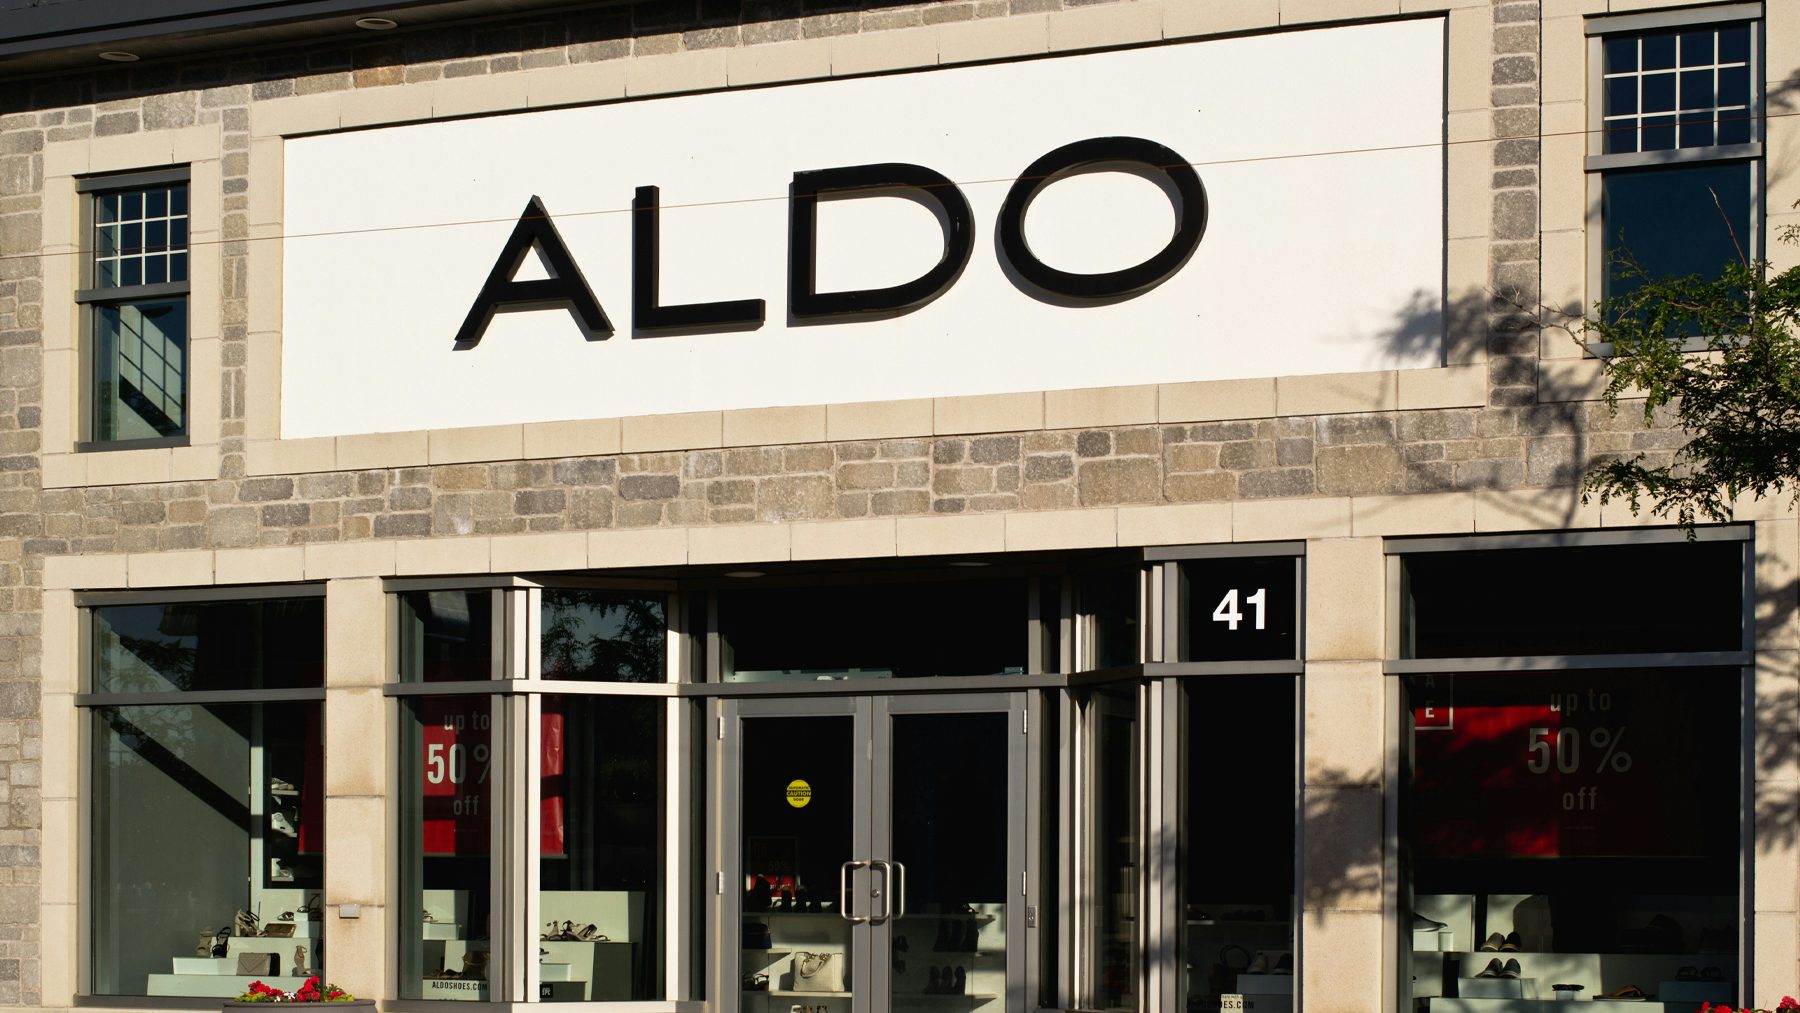 shops like aldo